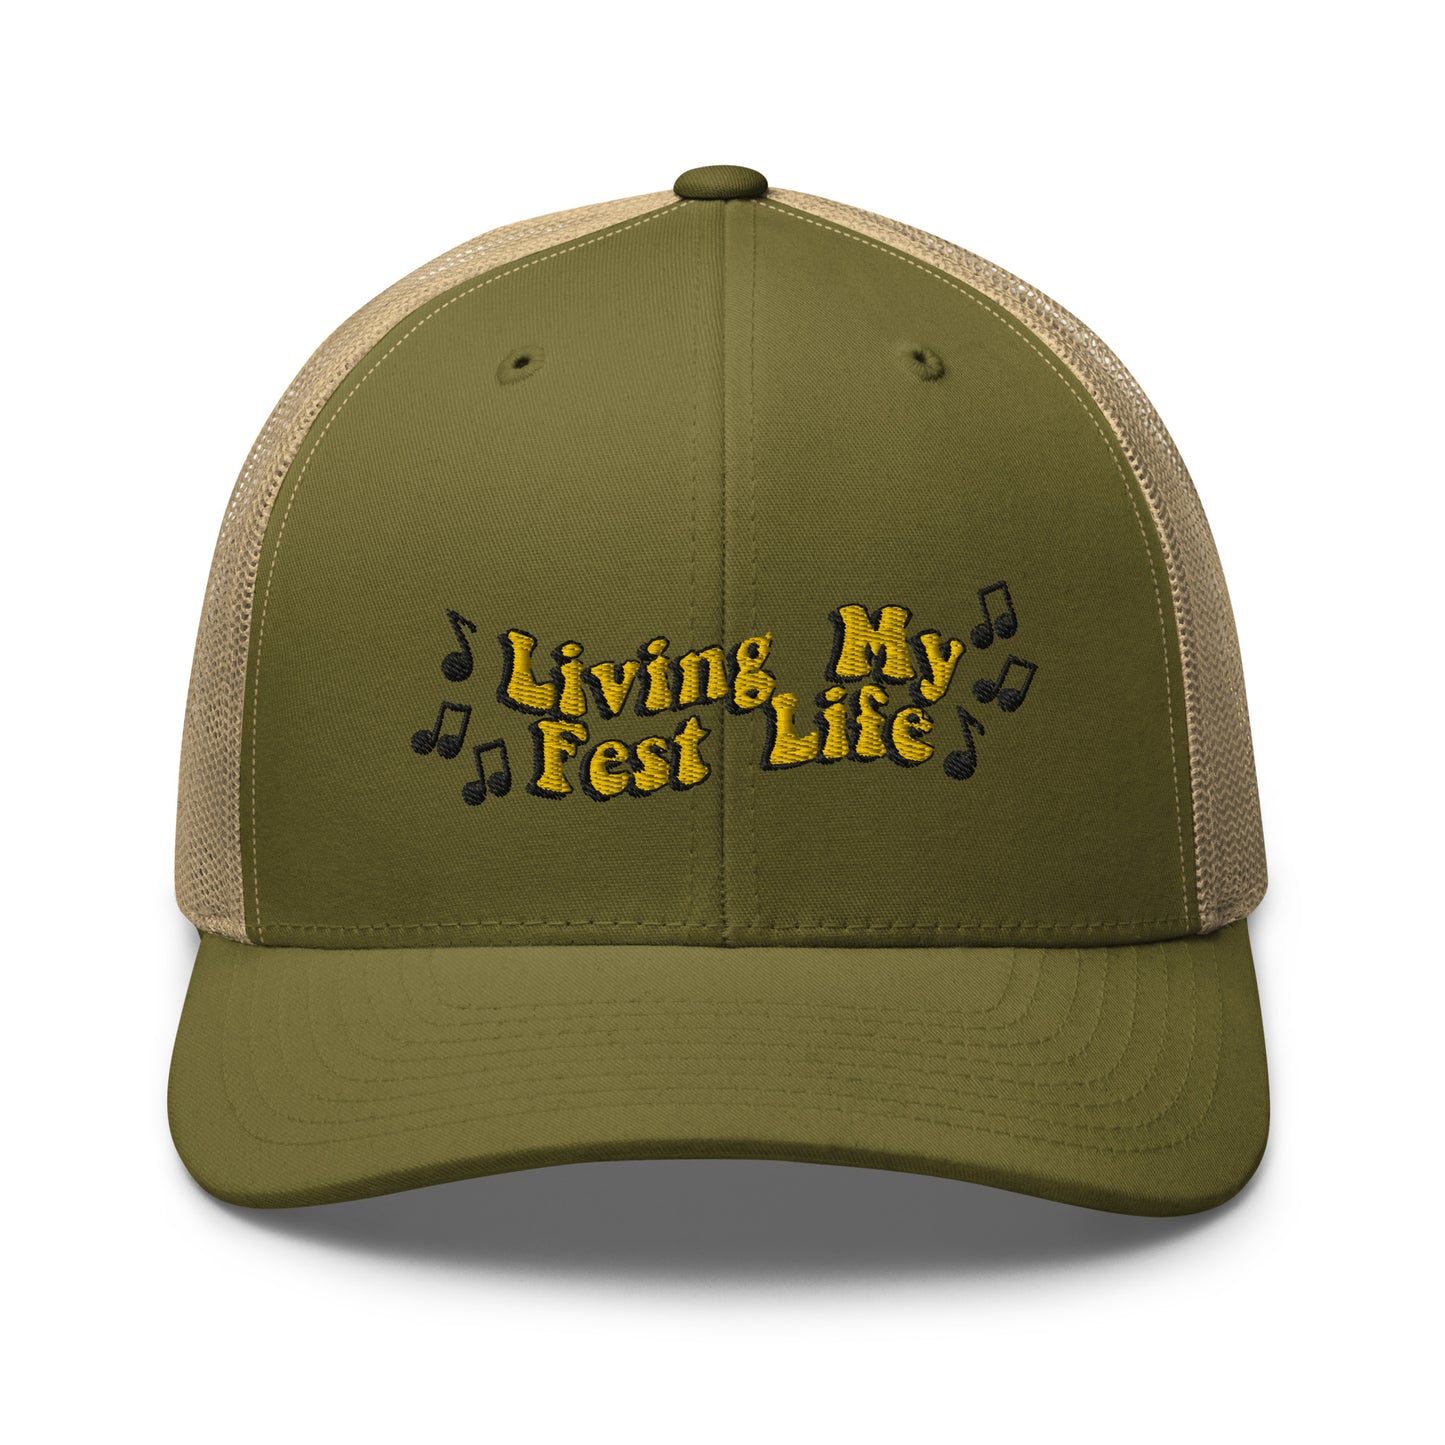 Living my Fest Life - Trucker Cap